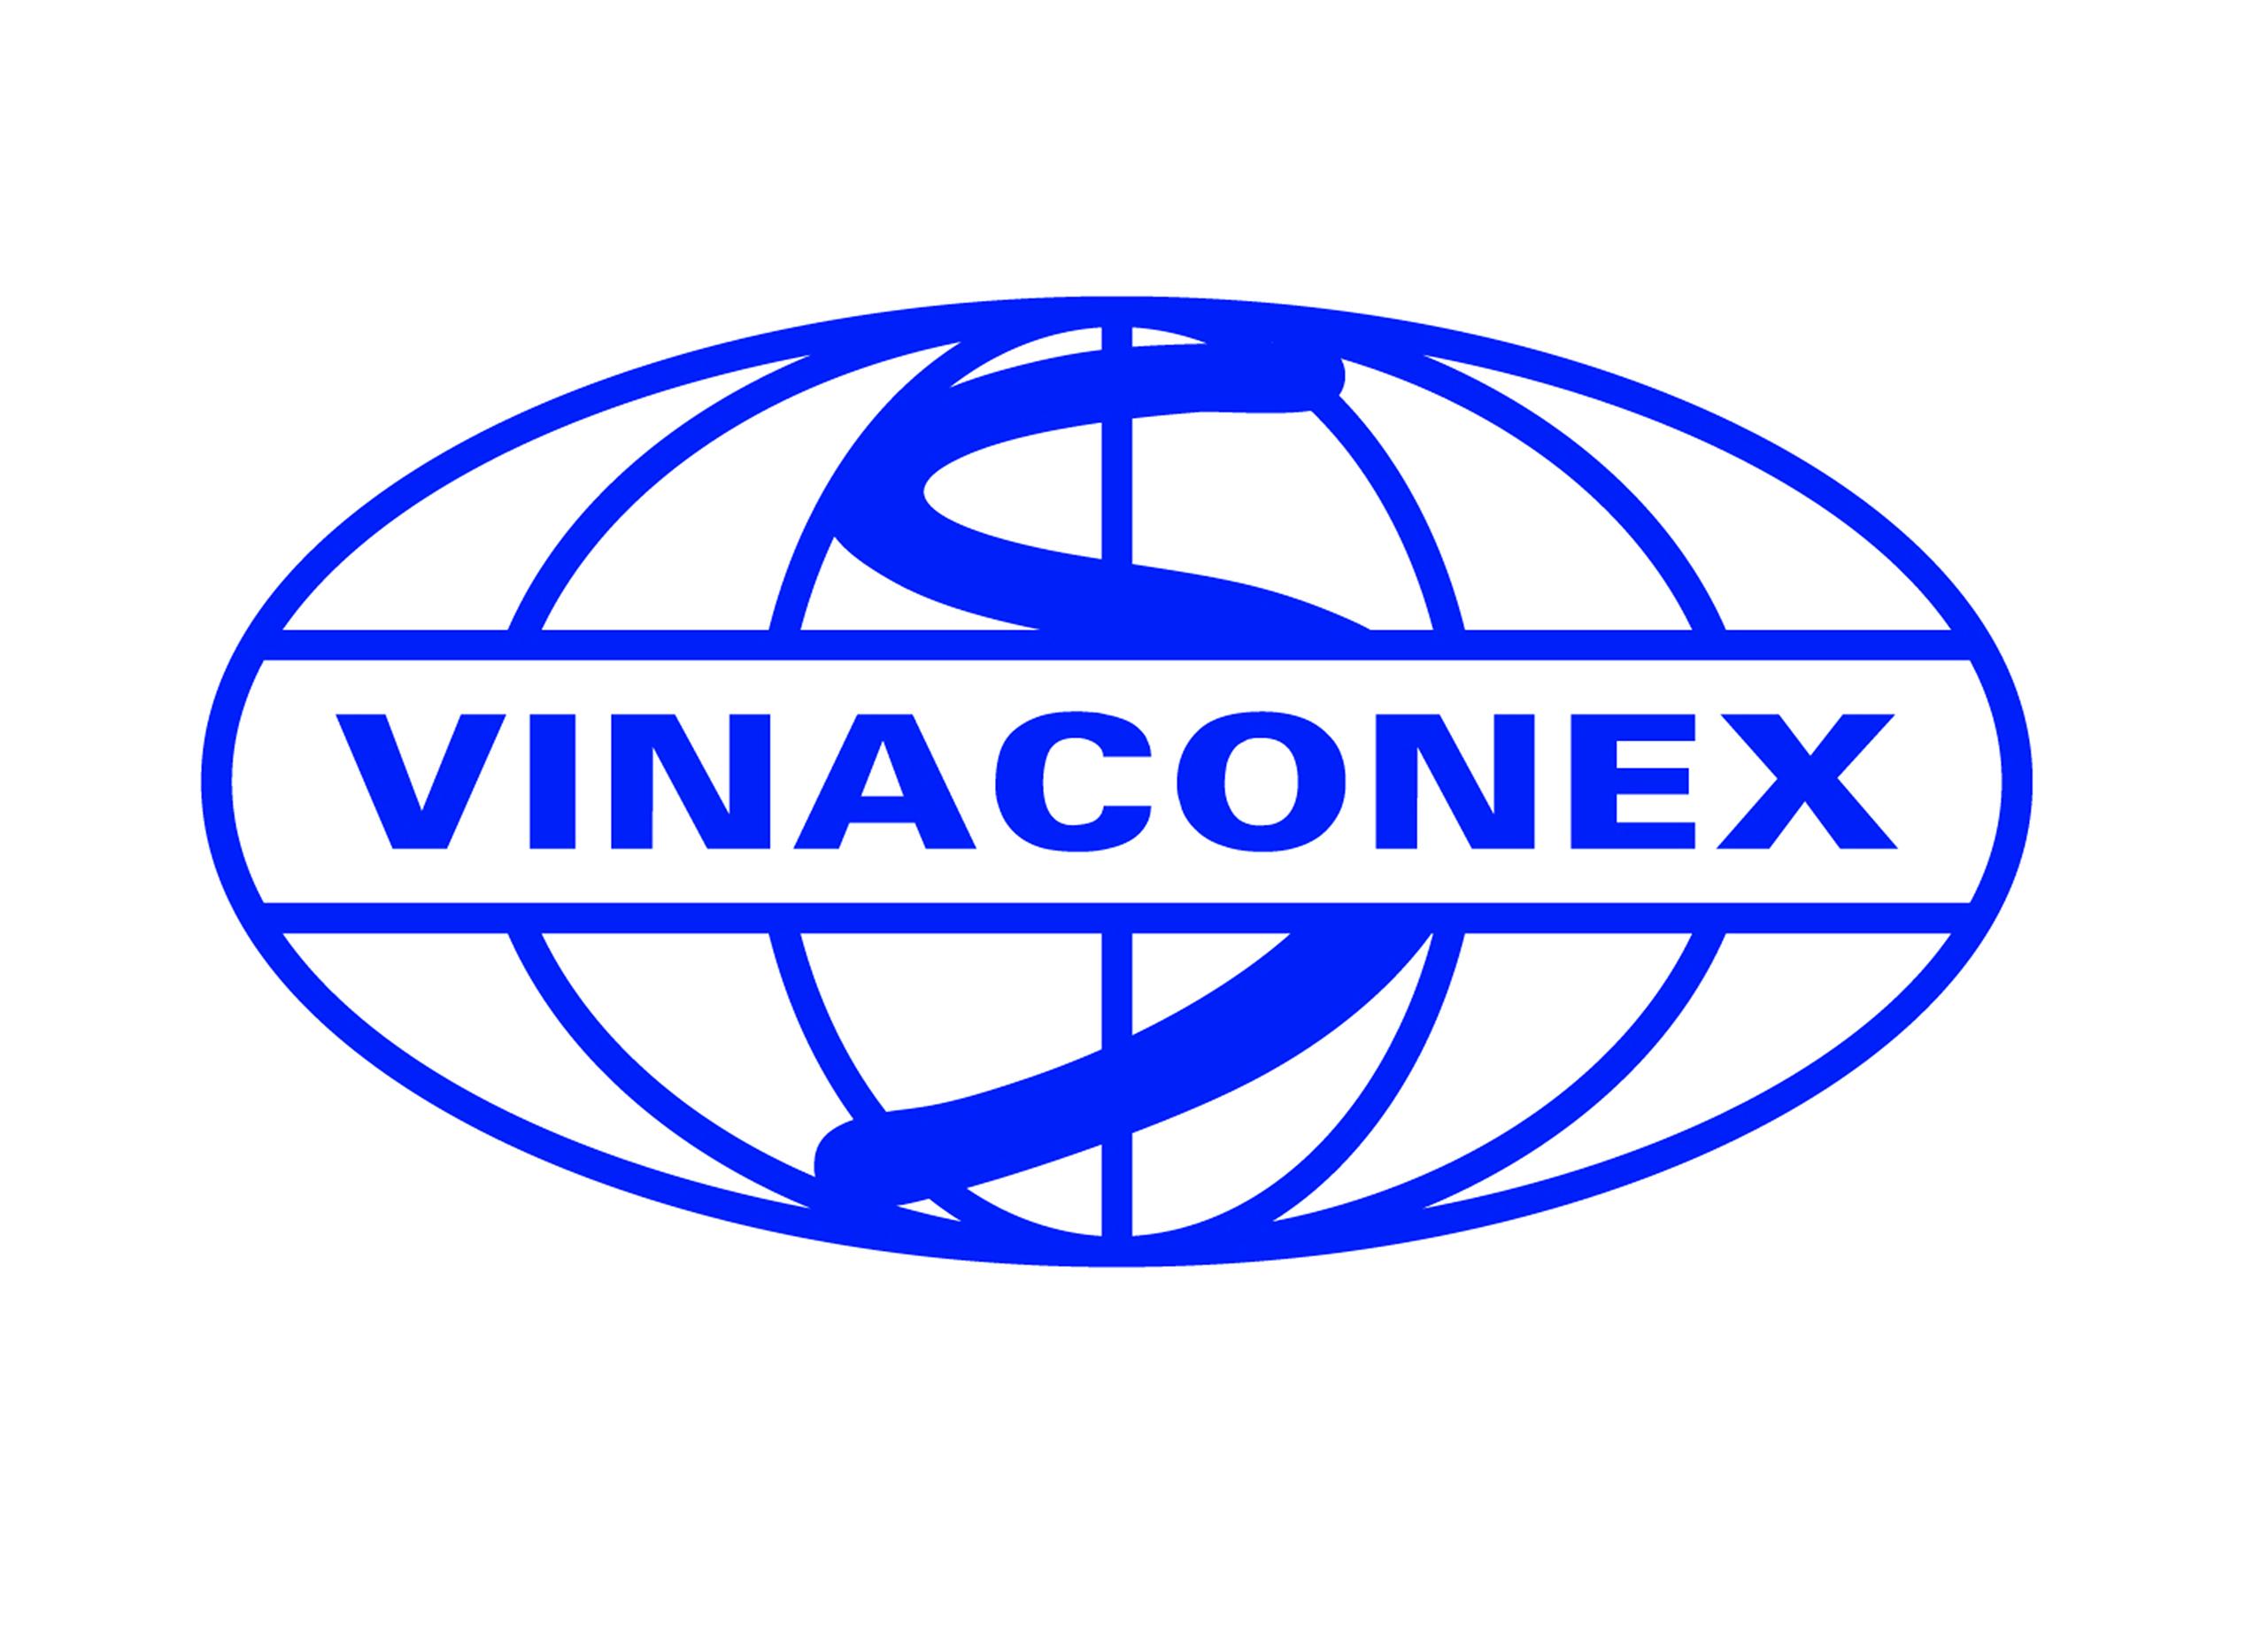 VINACONEX